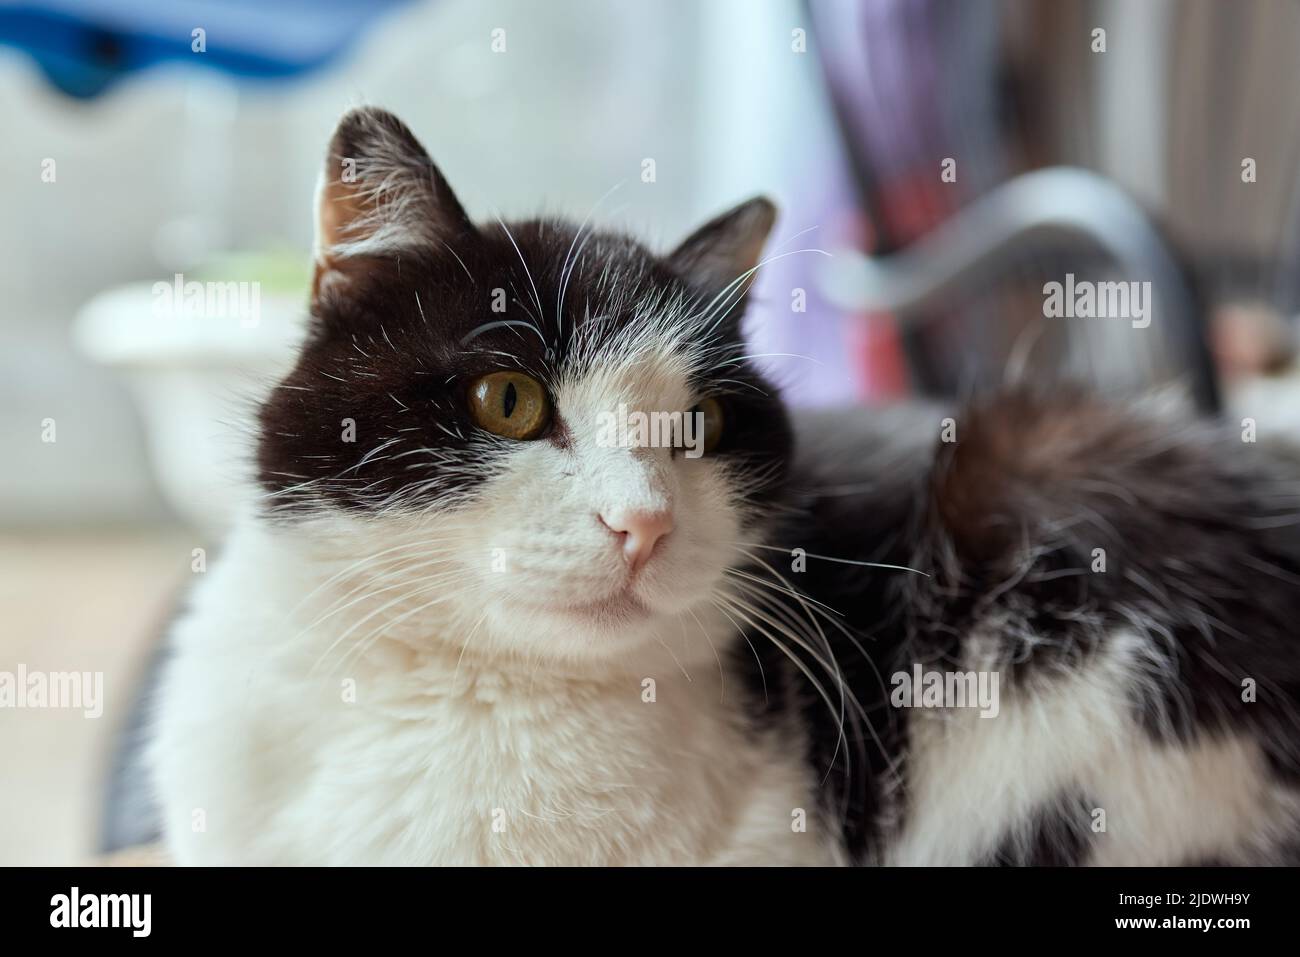 il gatto con le strisce si siede sul lettino e guarda direttamente la telecamera Foto Stock